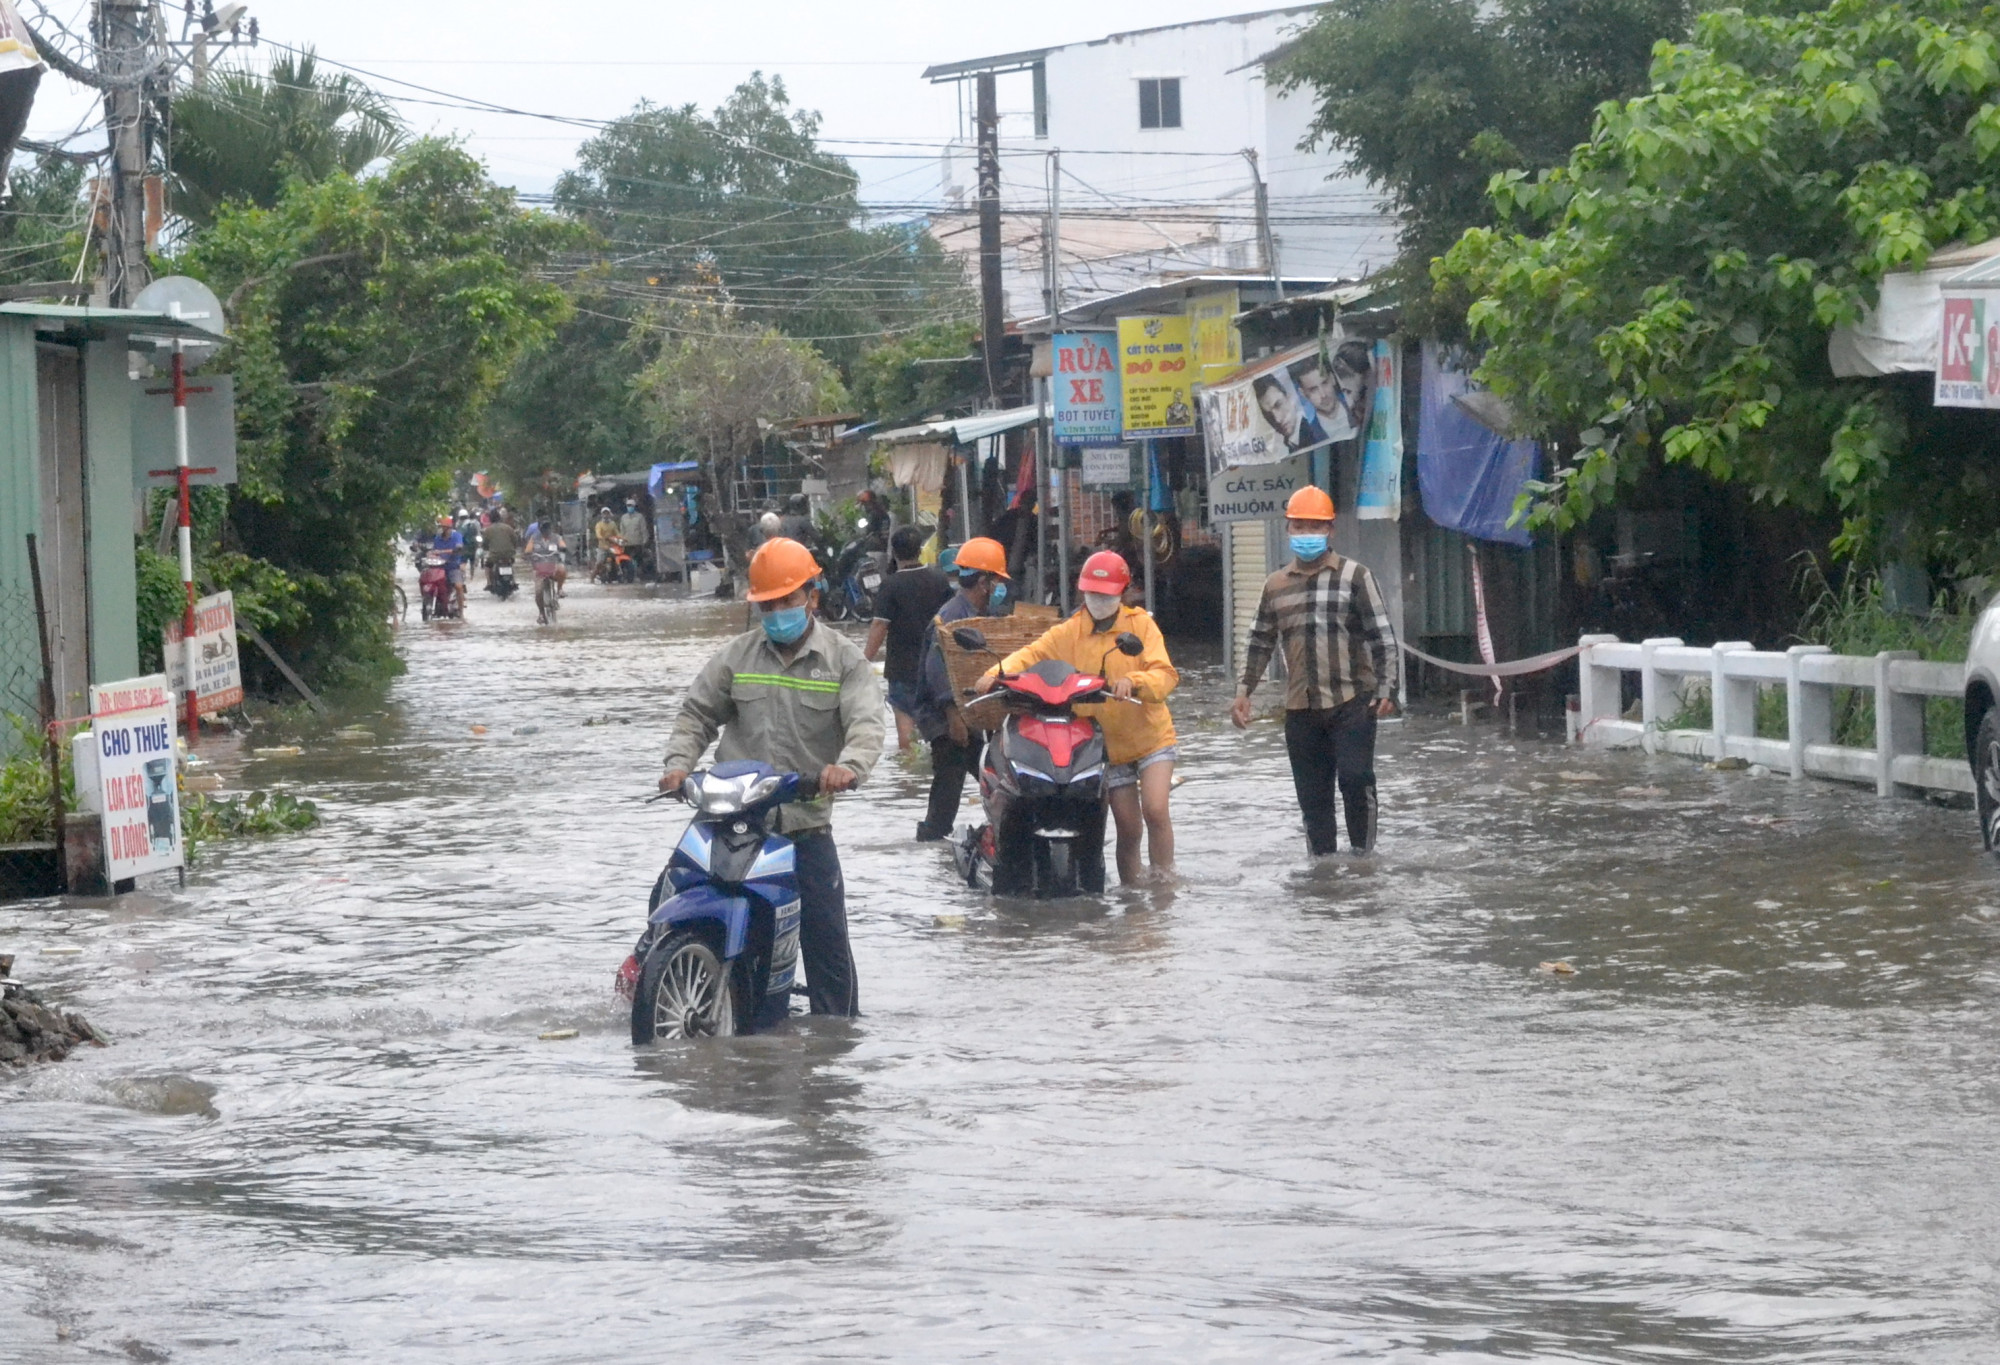 Nước ngập sâu làm xe chết máy, người dân phải dắt bộ qua đoạn đường thuộc thôn Thái Thông, xã Vĩnh Thái, TP. Nha Trang, tỉnh Khánh Hòa